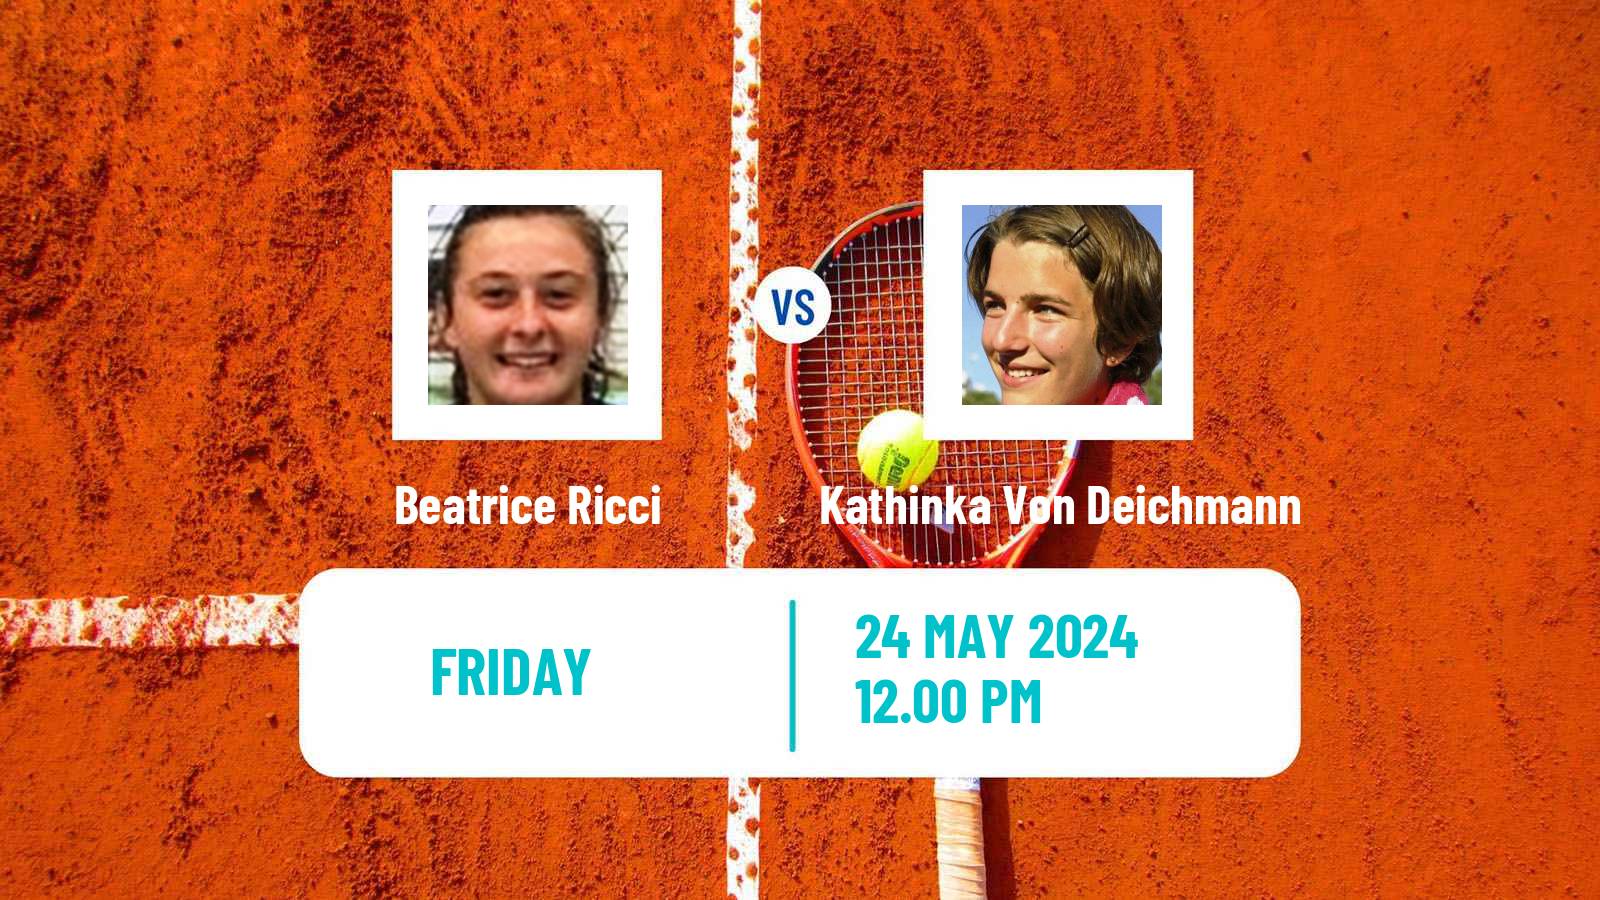 Tennis ITF W75 Grado Women Beatrice Ricci - Kathinka Von Deichmann